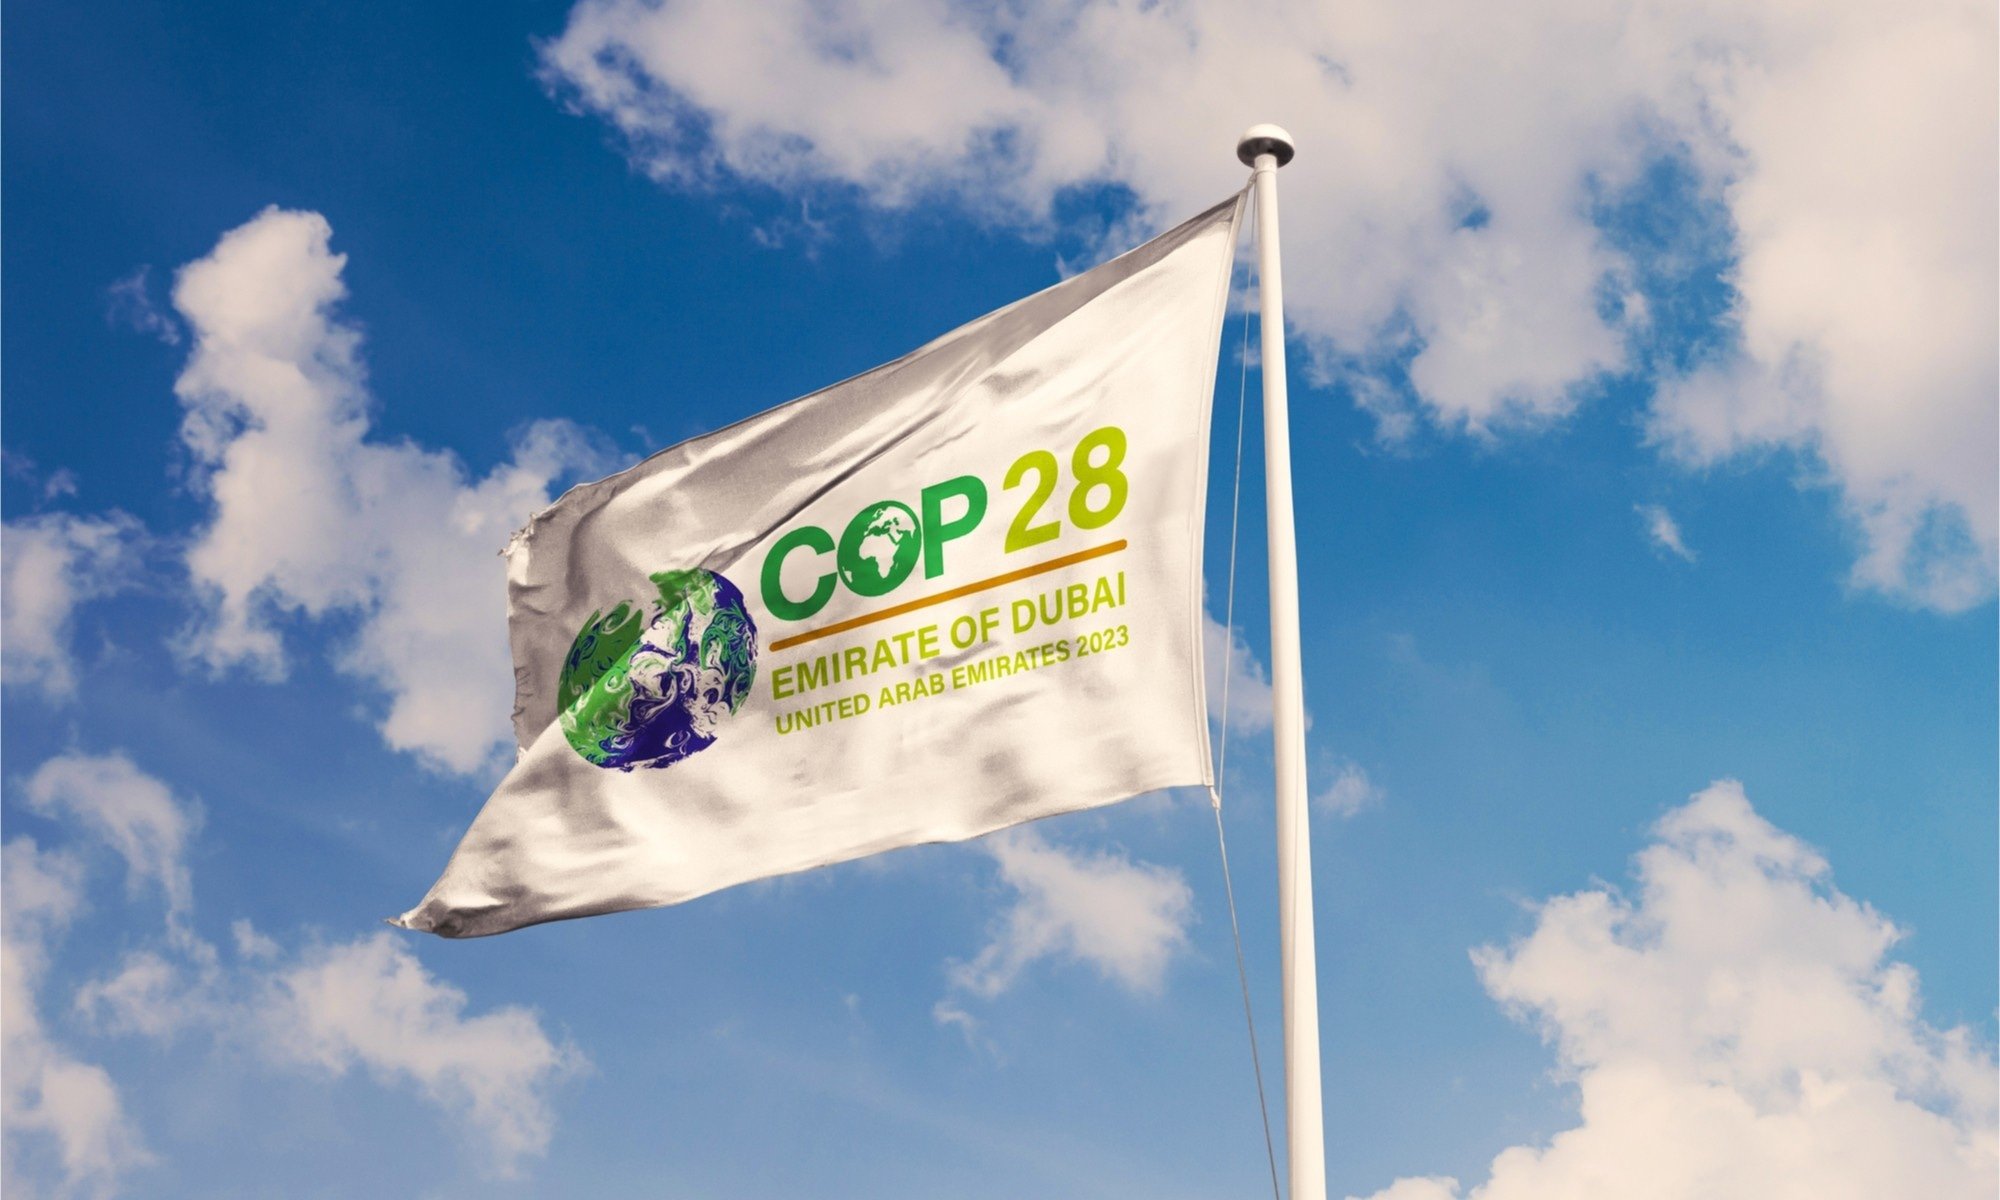 Presidente de la COP28 ‘no es apto’ por su vínculo con sector petrolero: Amnistía